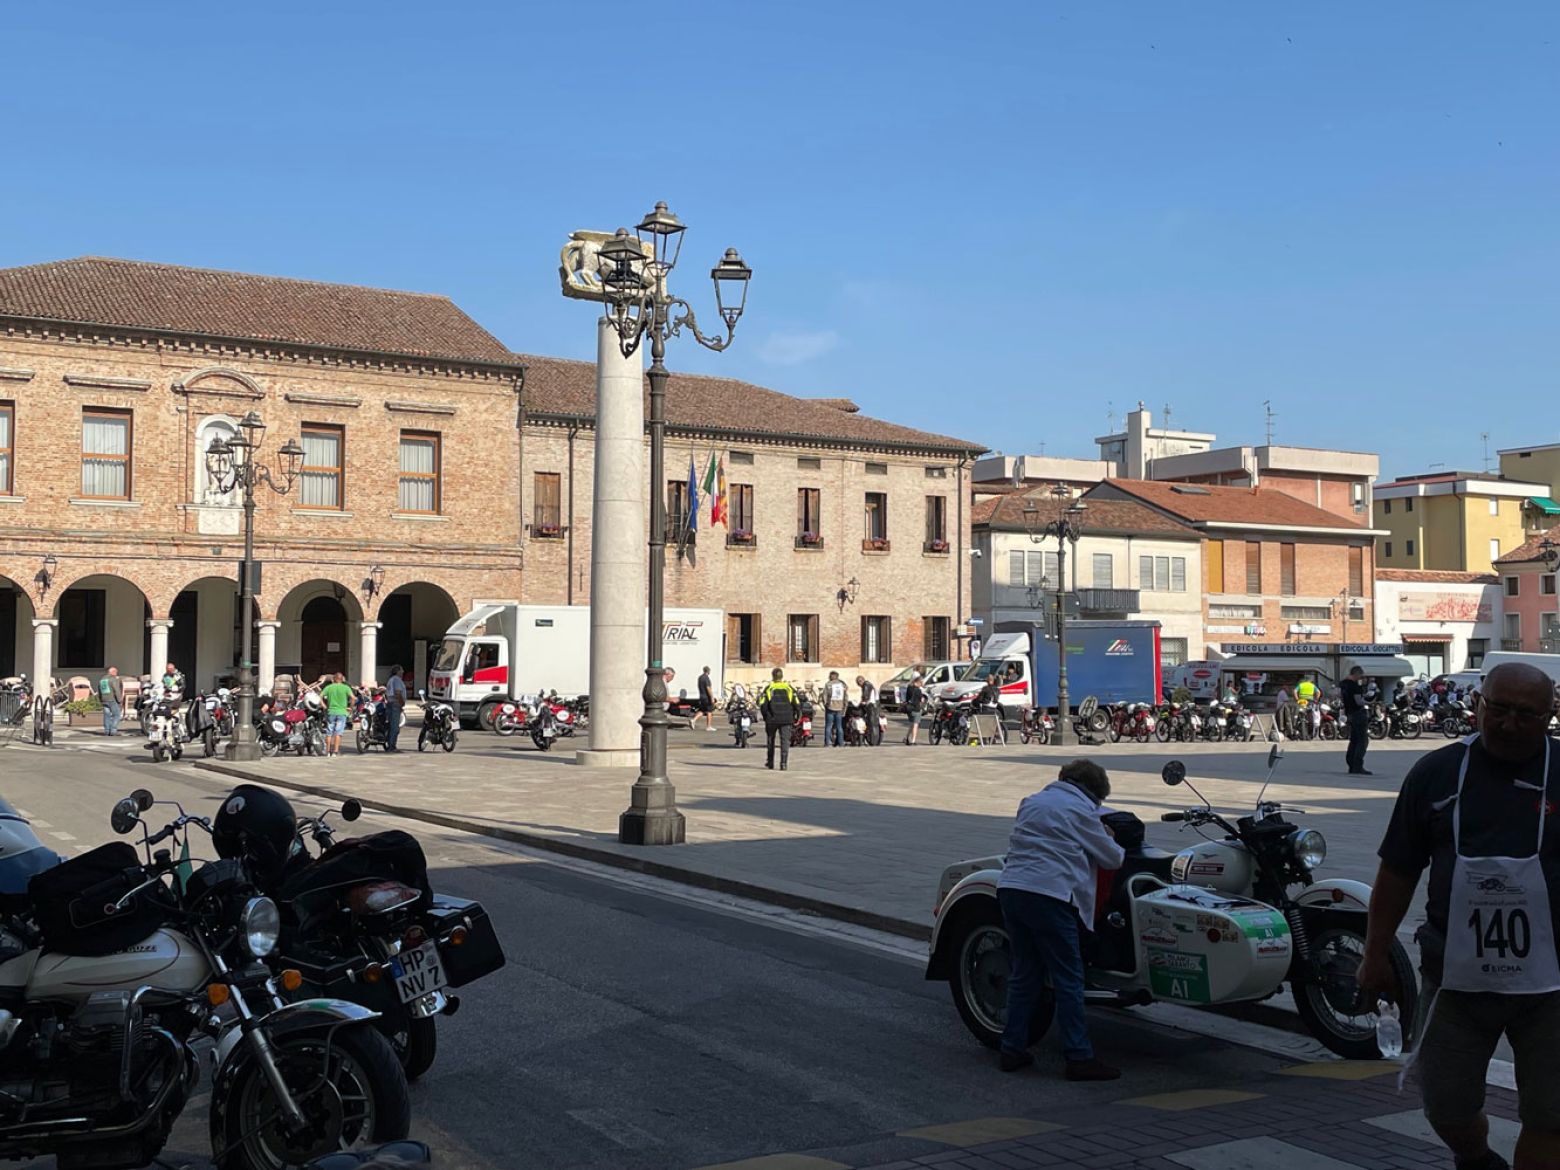 Trial partecipa alla Milano Taranto con i propri mezzi per attività di trasporto e logistica